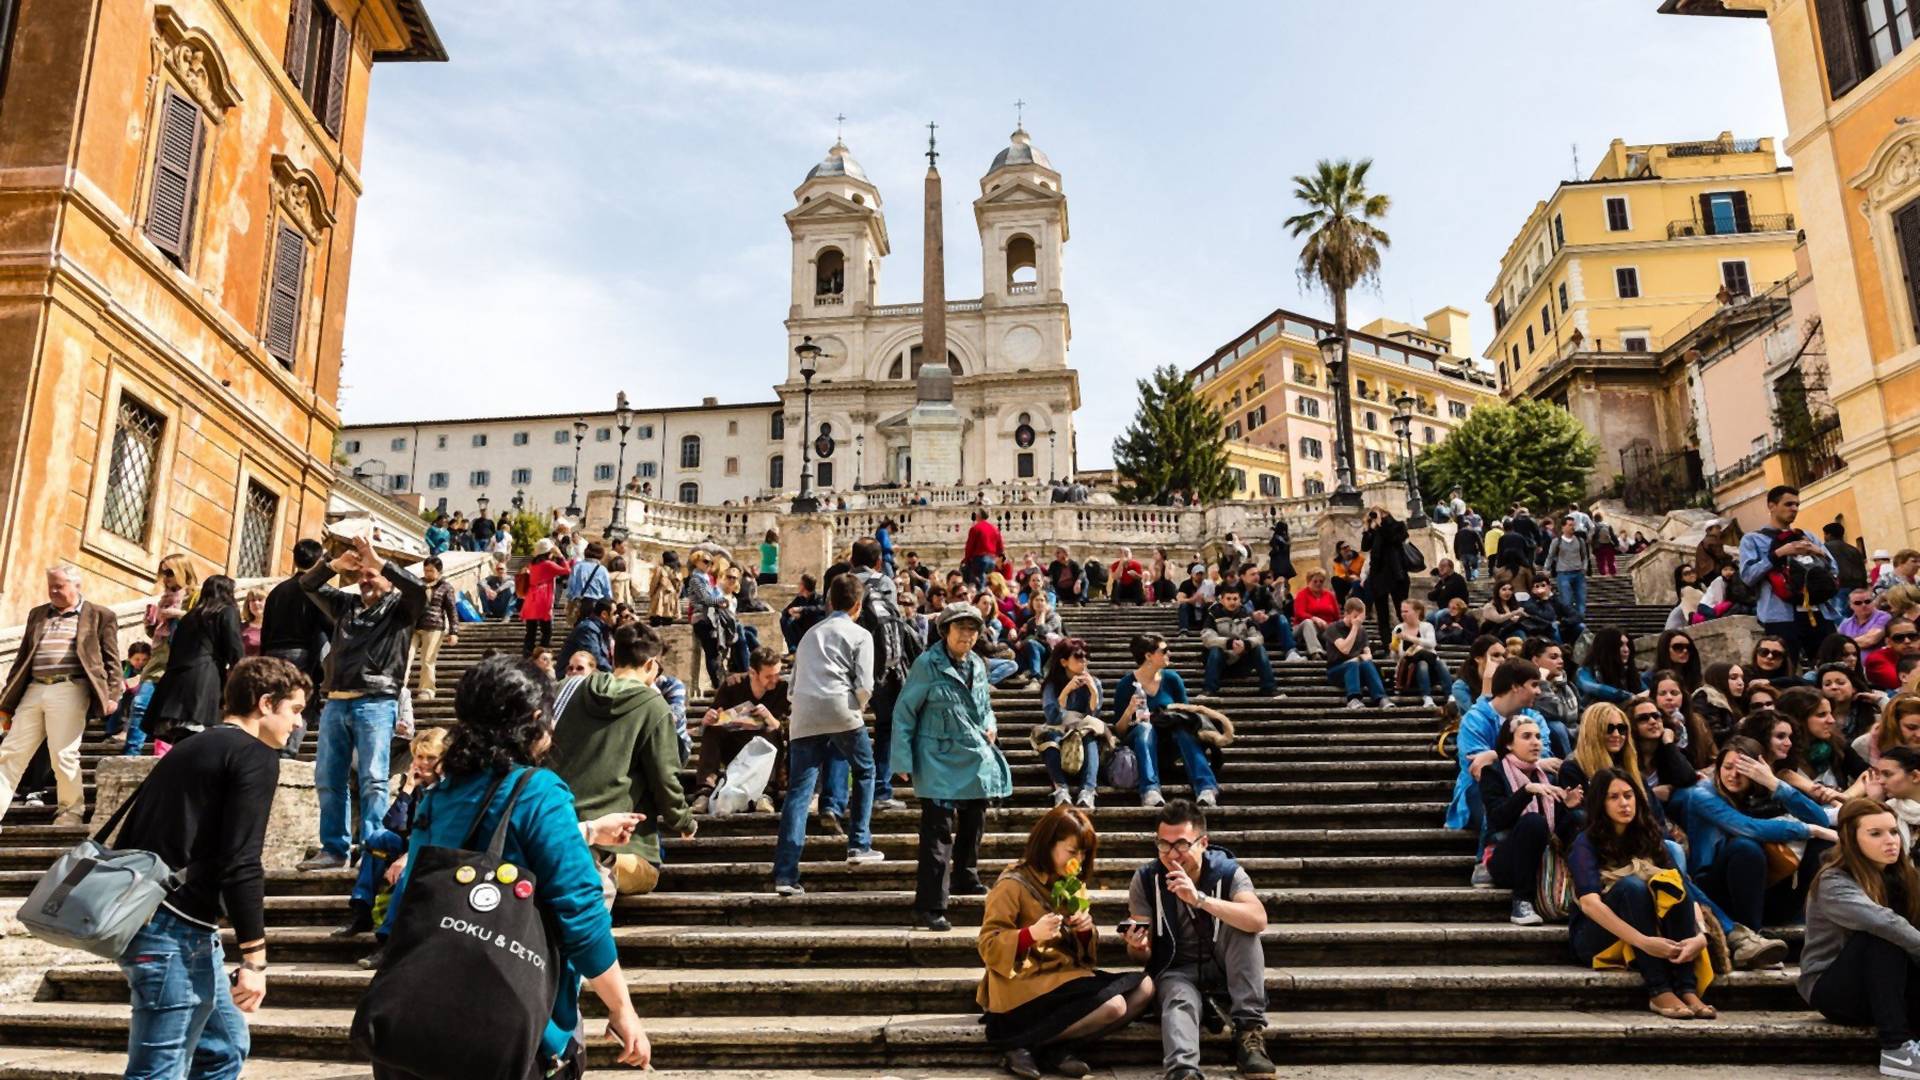 Kazna za sedenje na čuvenim Španskim stepenicama u Rimu